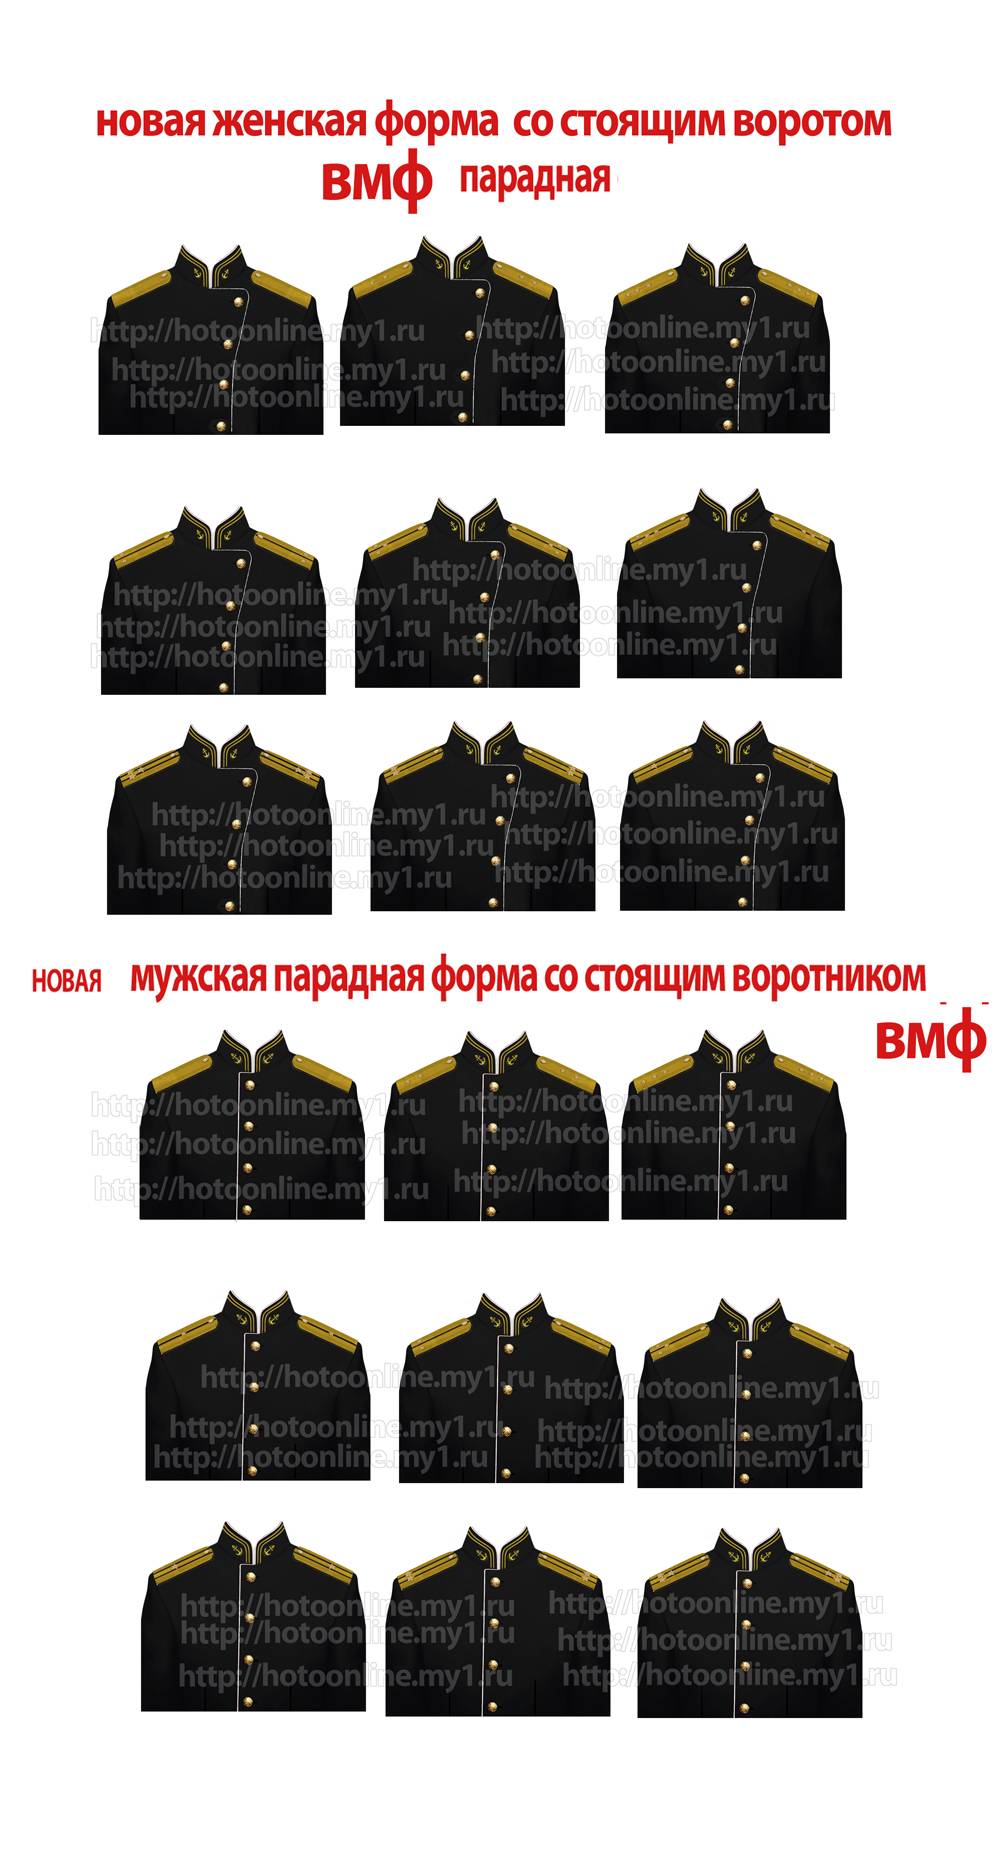 Фото для военкомата. Сделать фотографию для военного билета в Москве по низкой цене